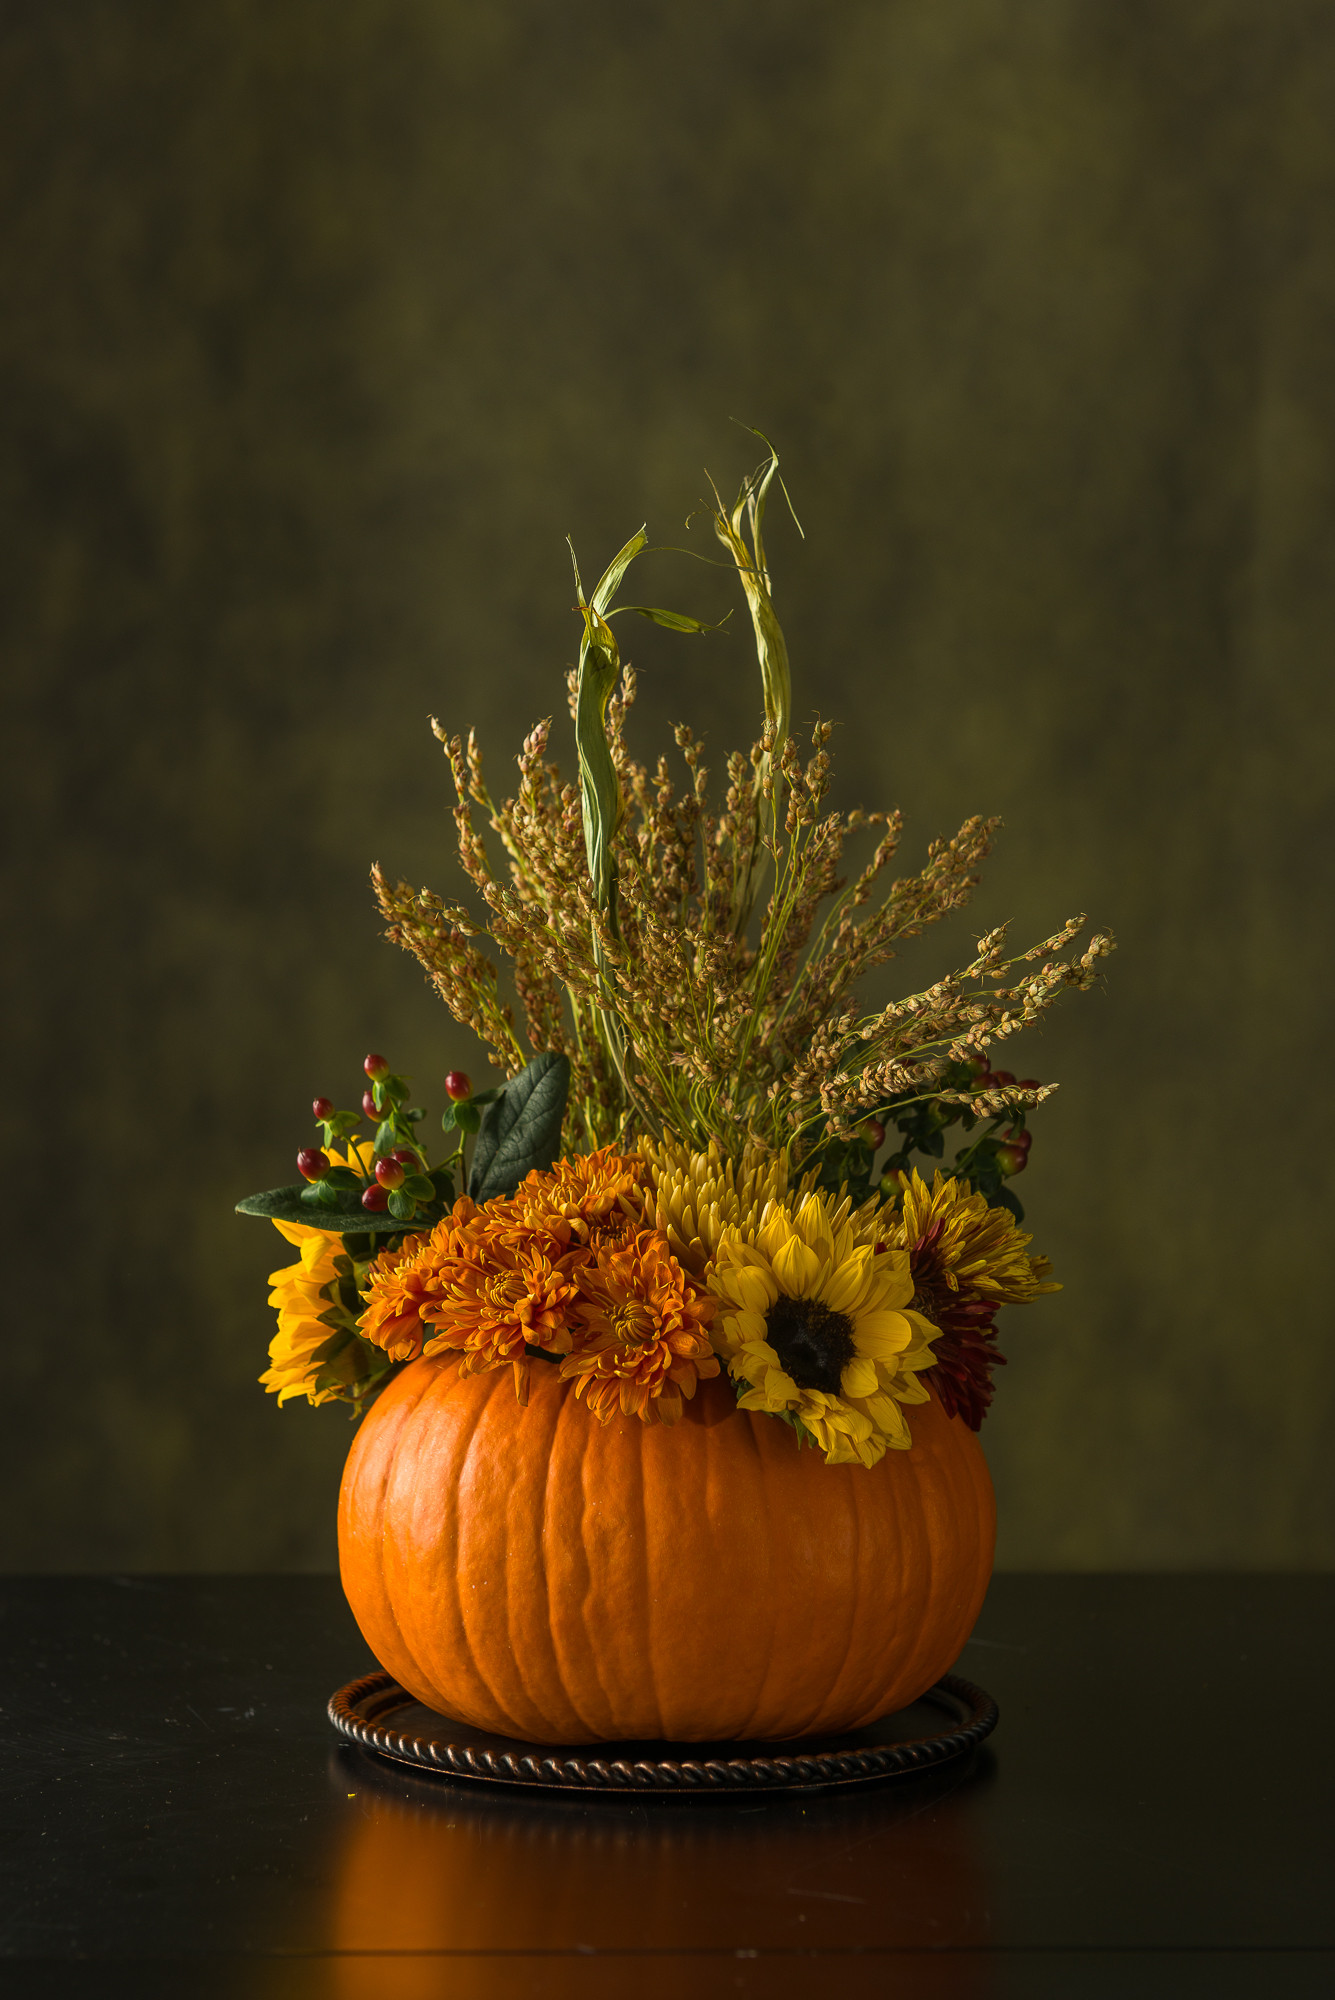 Fall pumpkin floral centerpiece for Thanksgiving.